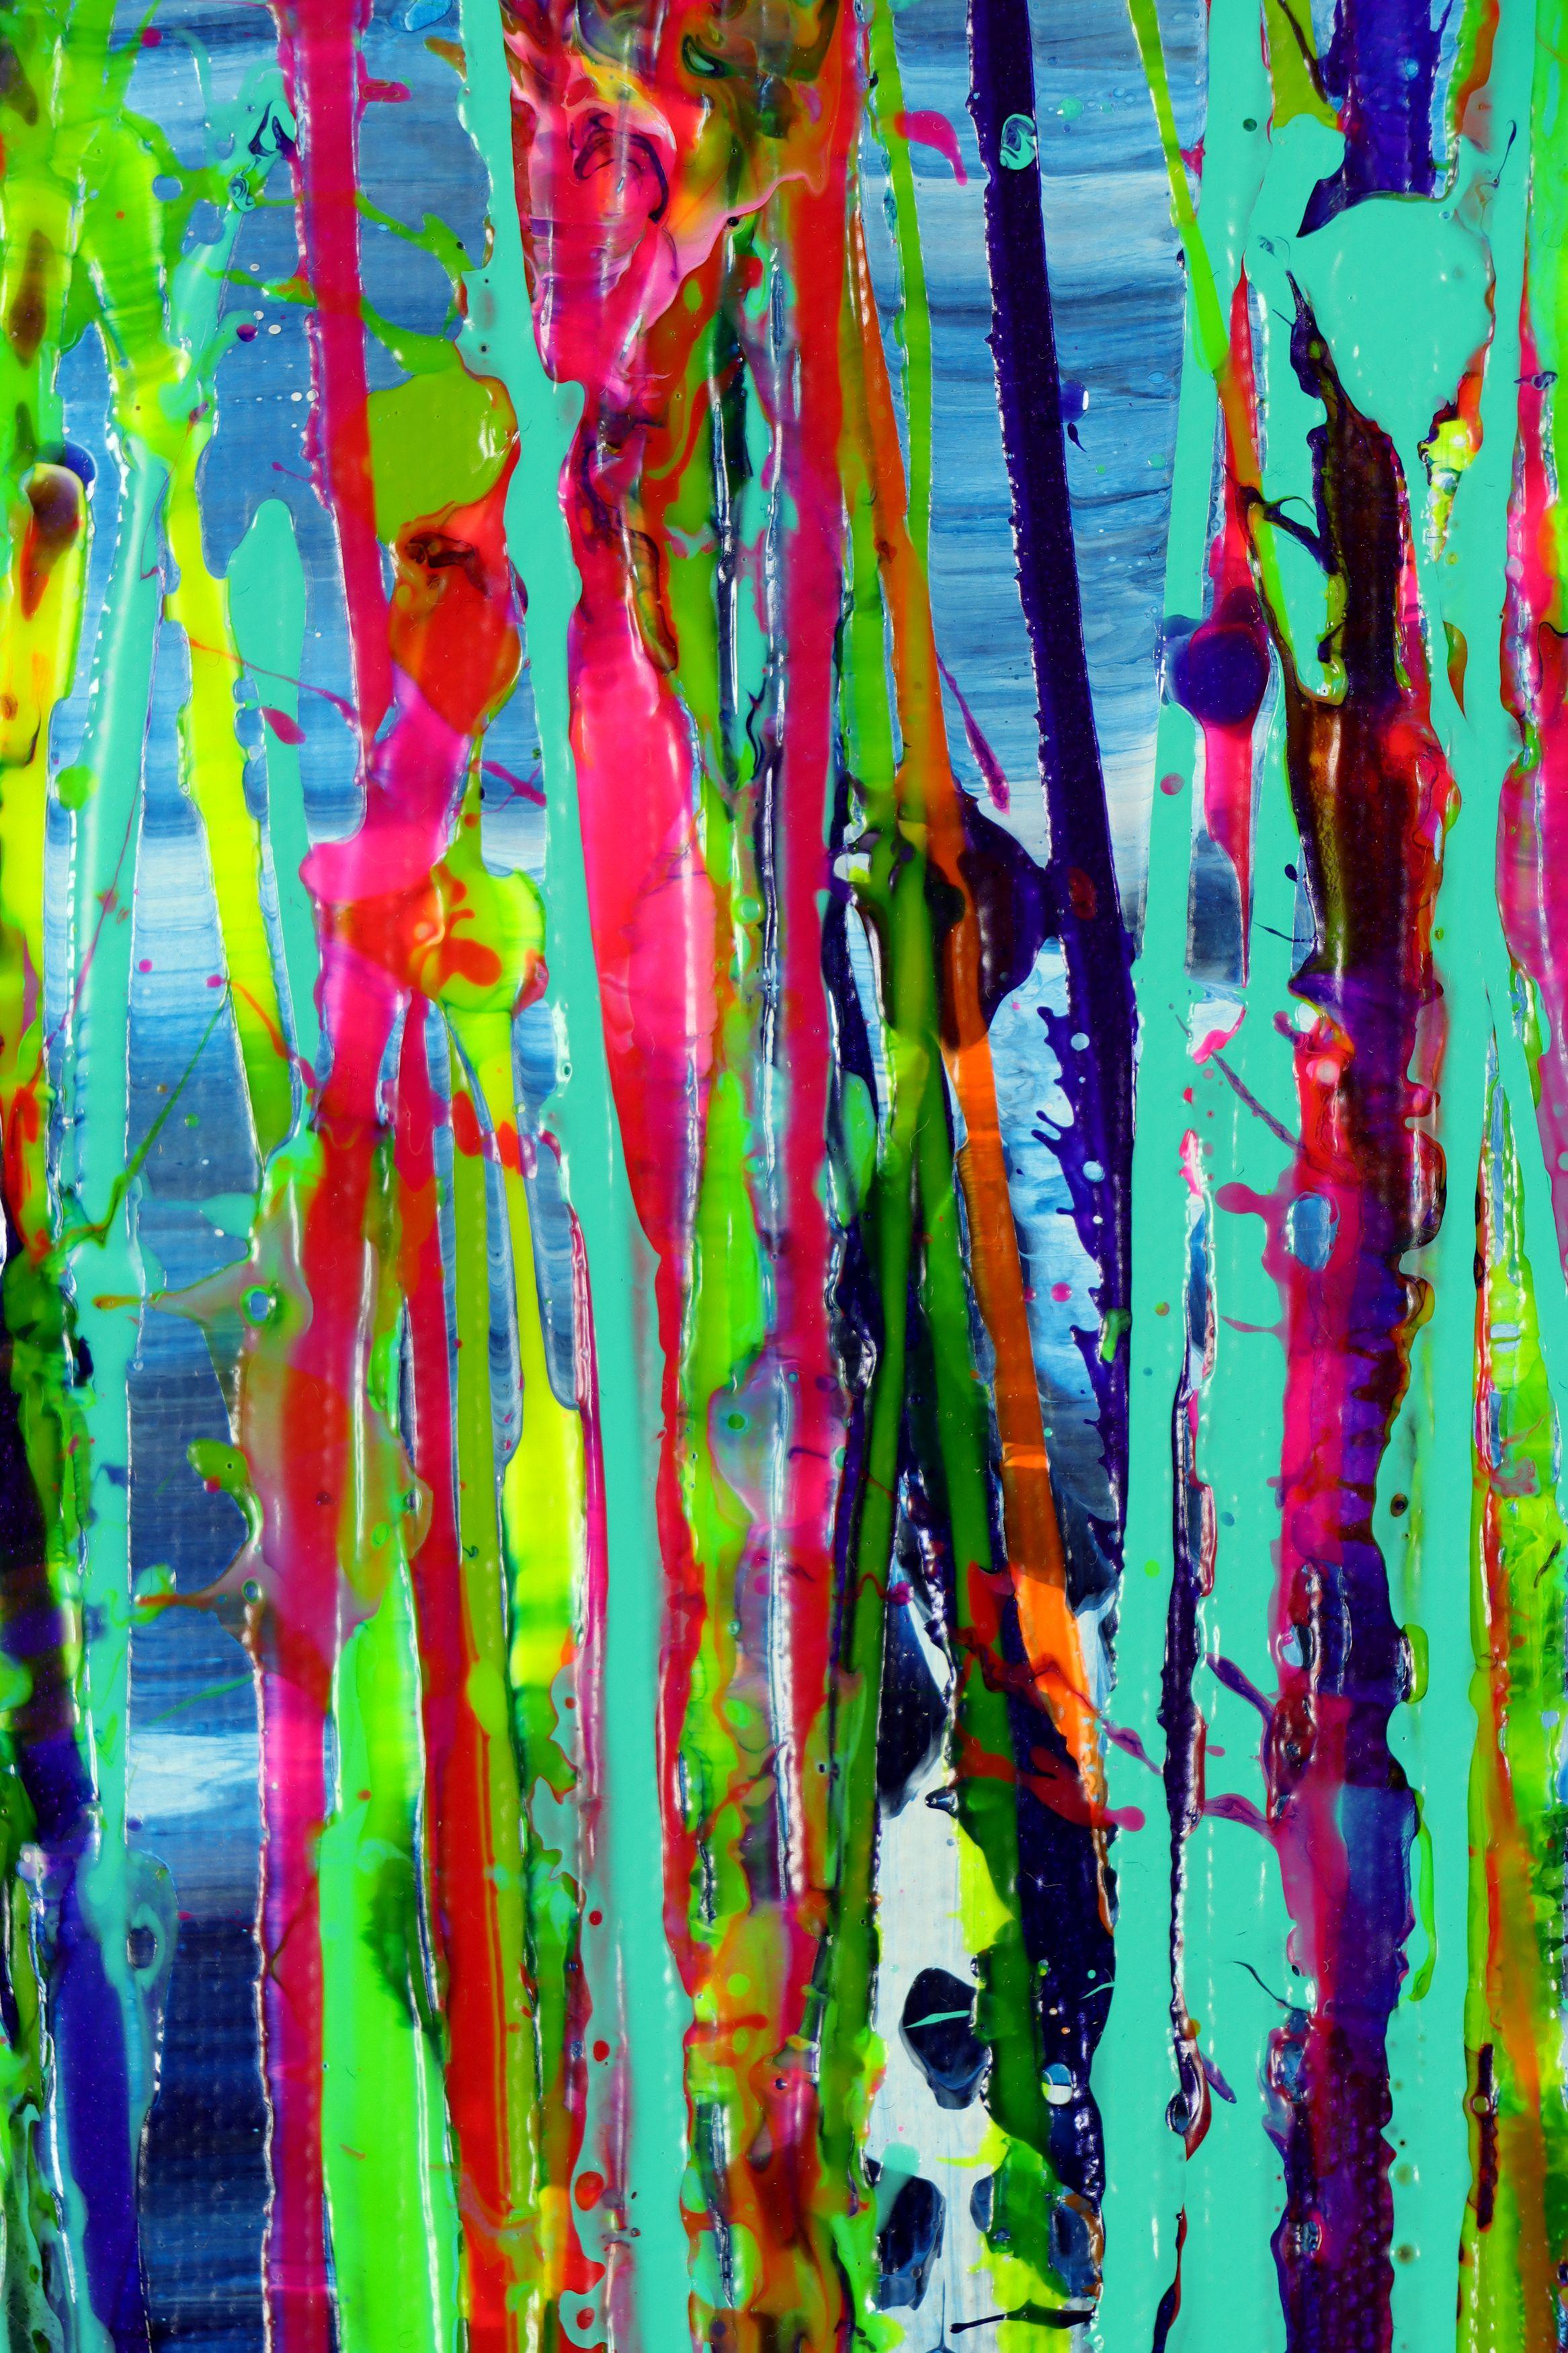 In Between Seasons 3, Gemälde, Acryl auf Leinwand (Abstrakter Expressionismus), Painting, von Nestor Toro